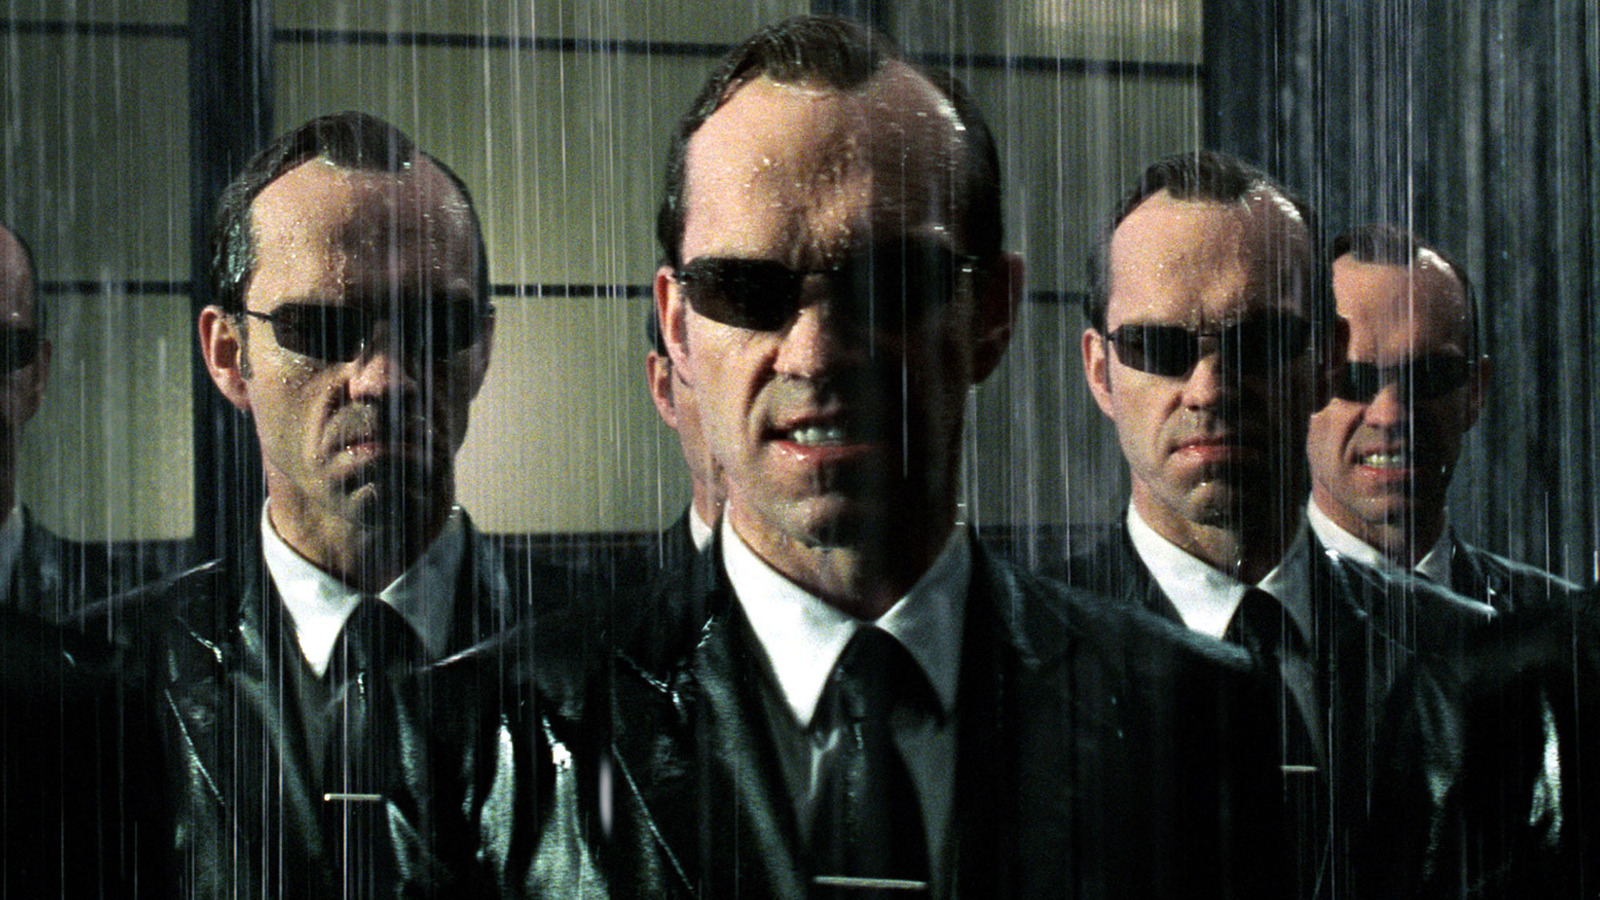 Hugo Weaving won't be back for 'The Matrix 4